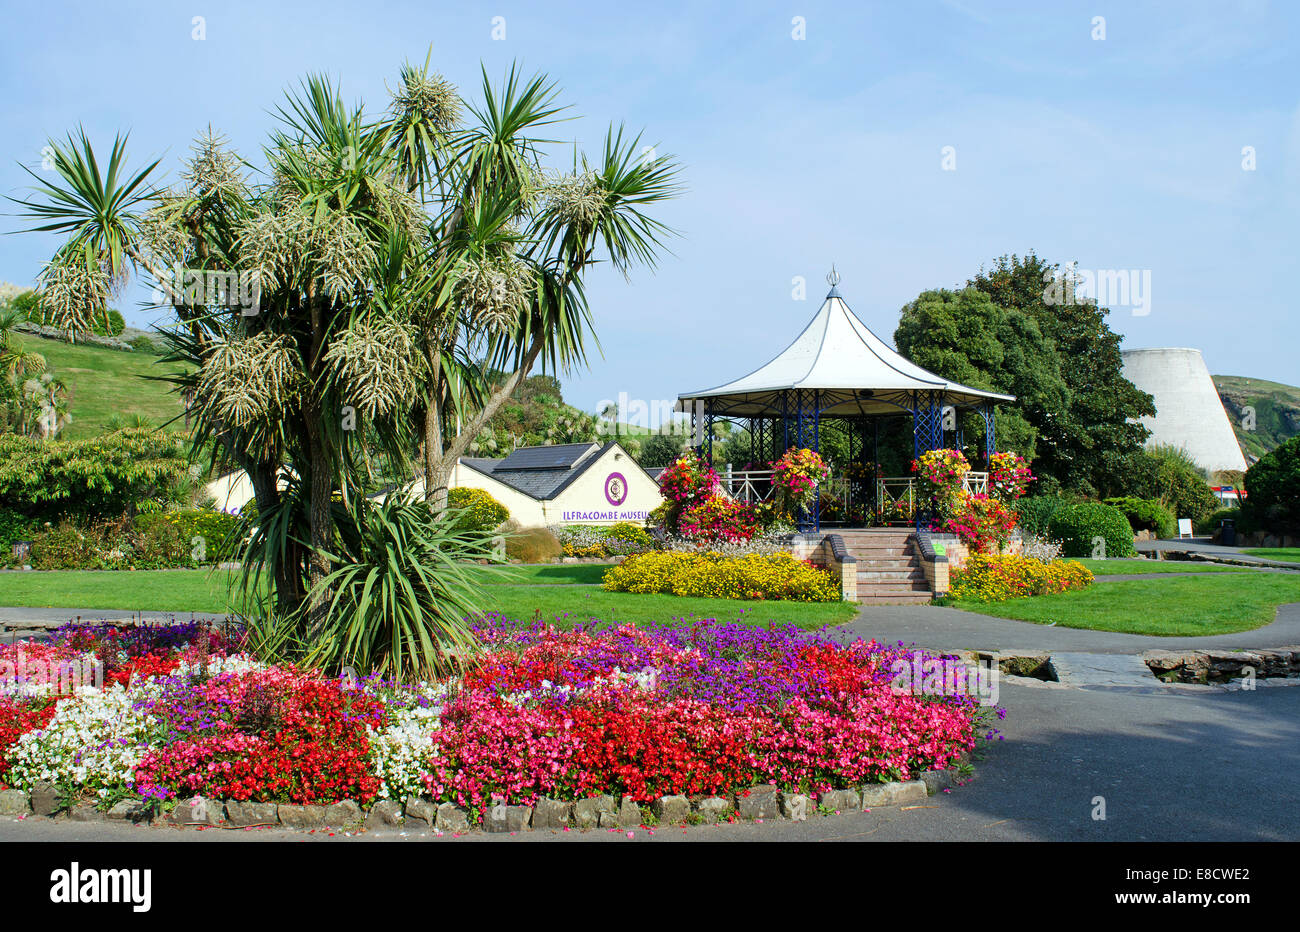 Runnymede gardens in Ilfracombe, Devon, UK Stock Photo